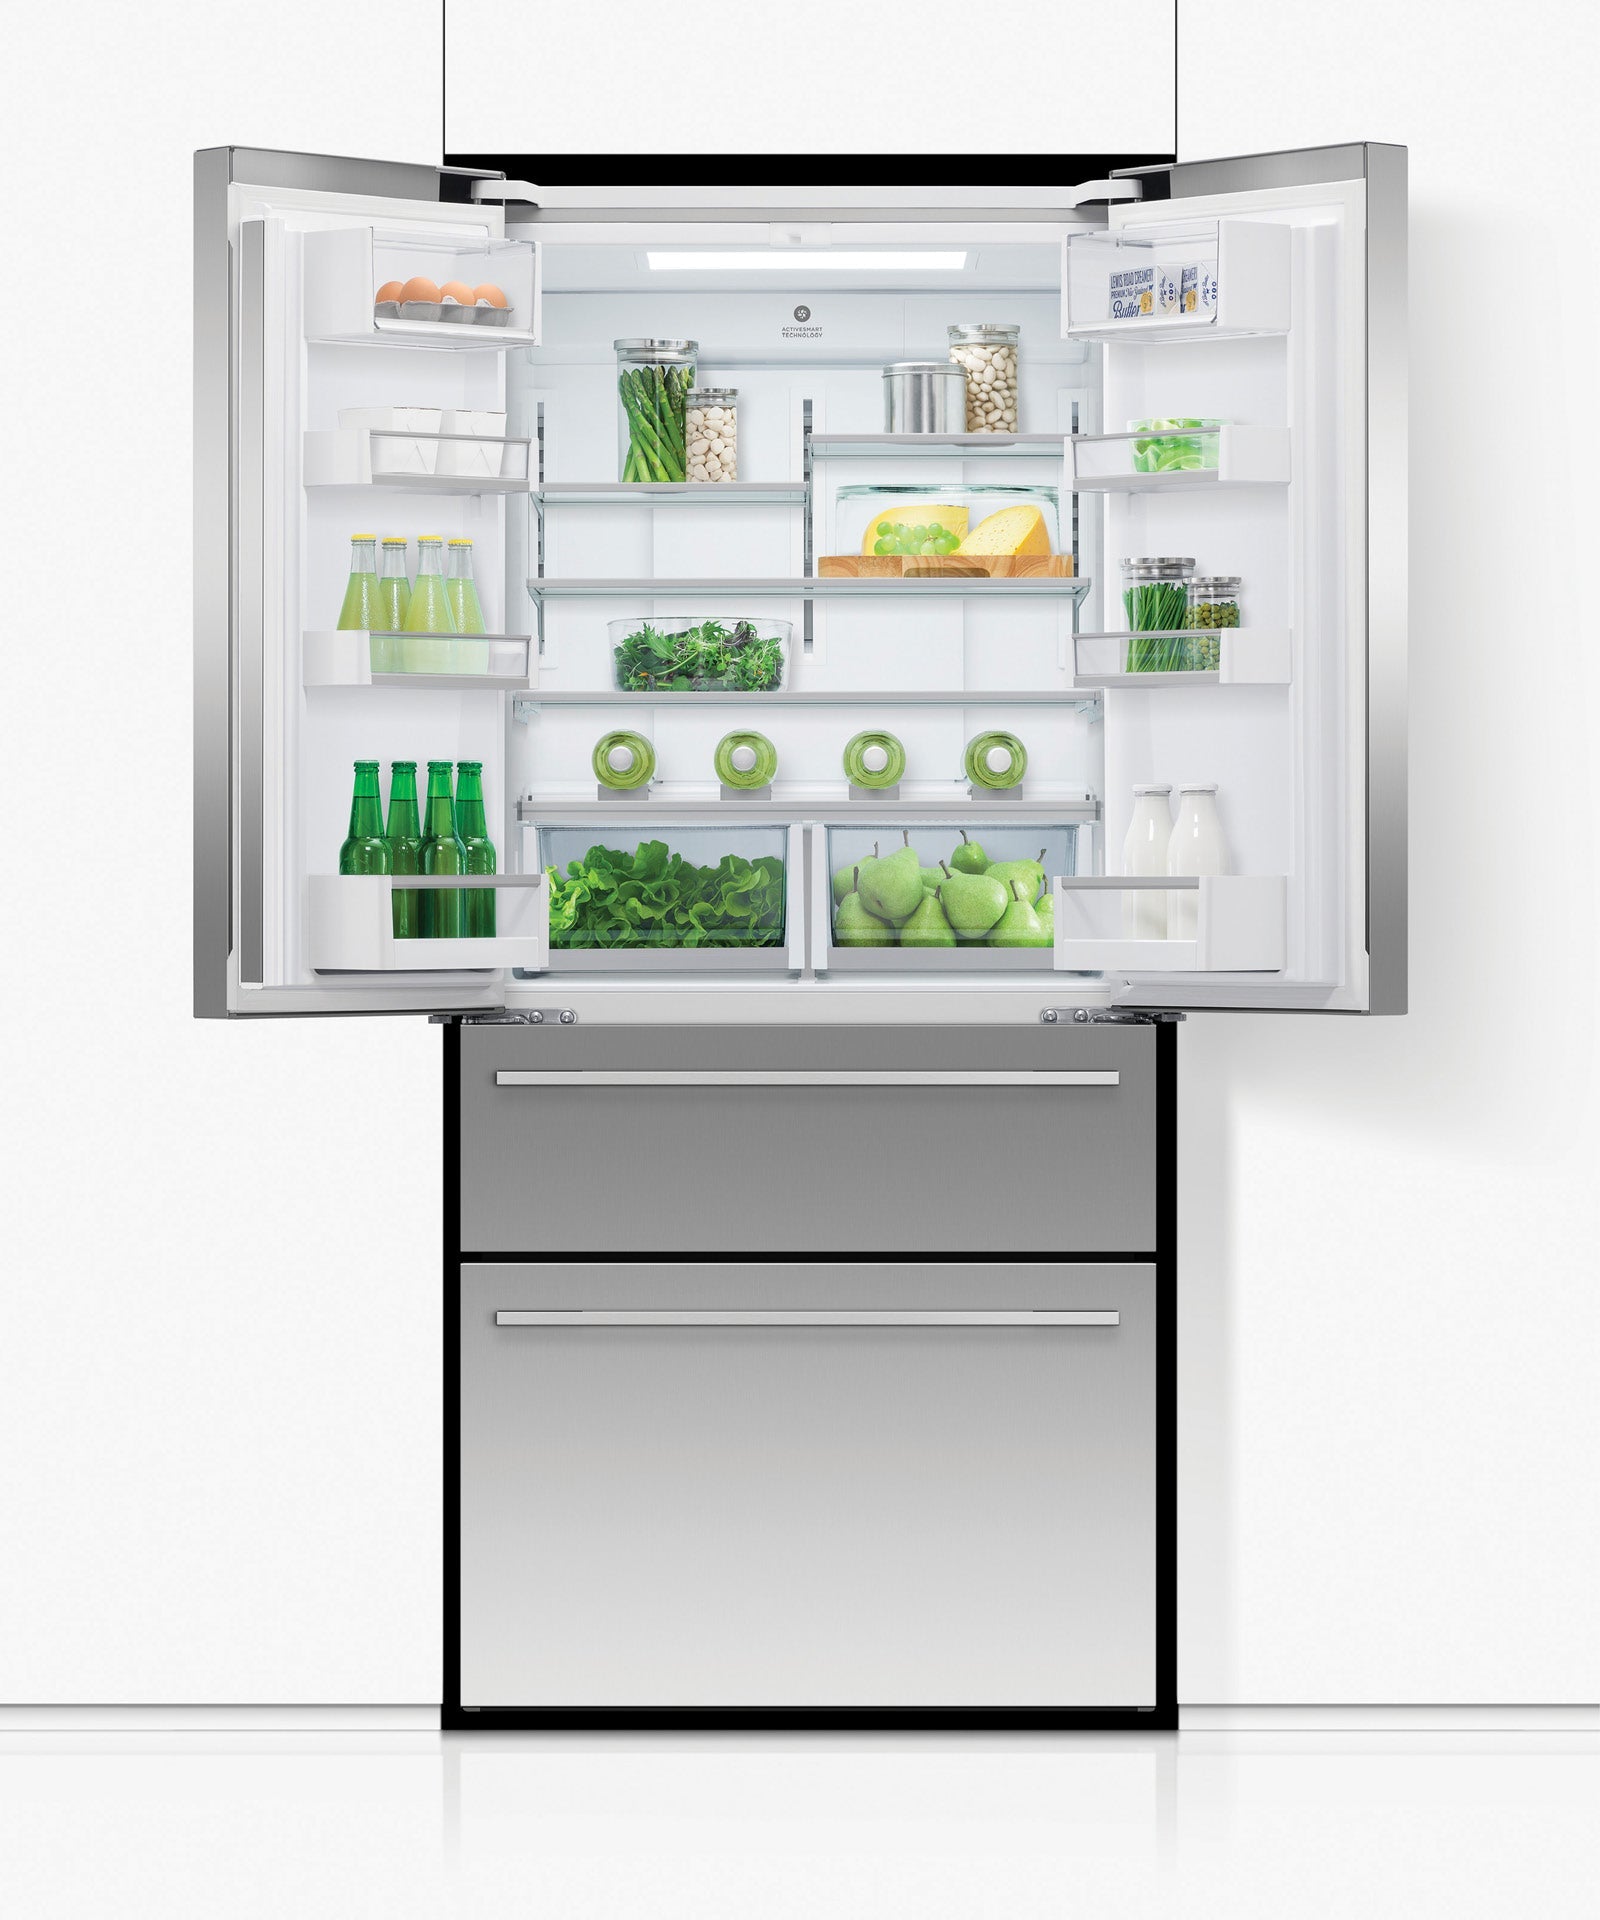 Freestanding French Door Refrigerator Freezer, 32", 16.9 cu ft, Ice & Water, pdp